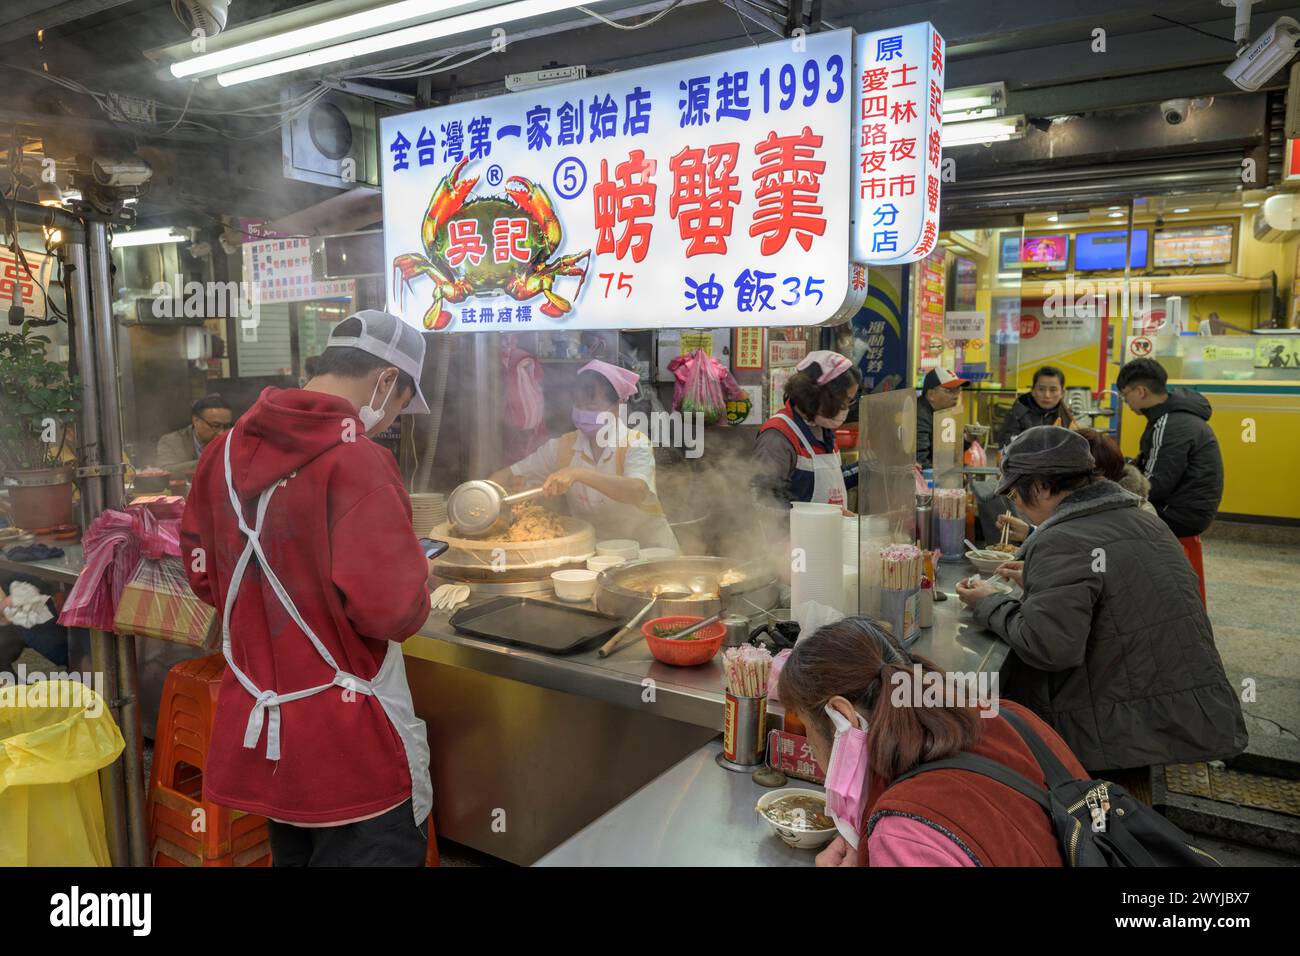 Nachtmarktszene mit Köchen, die kochen, und Gästen, die an einem belebten Imbissstand mit bunten Schildern sitzen Stockfoto